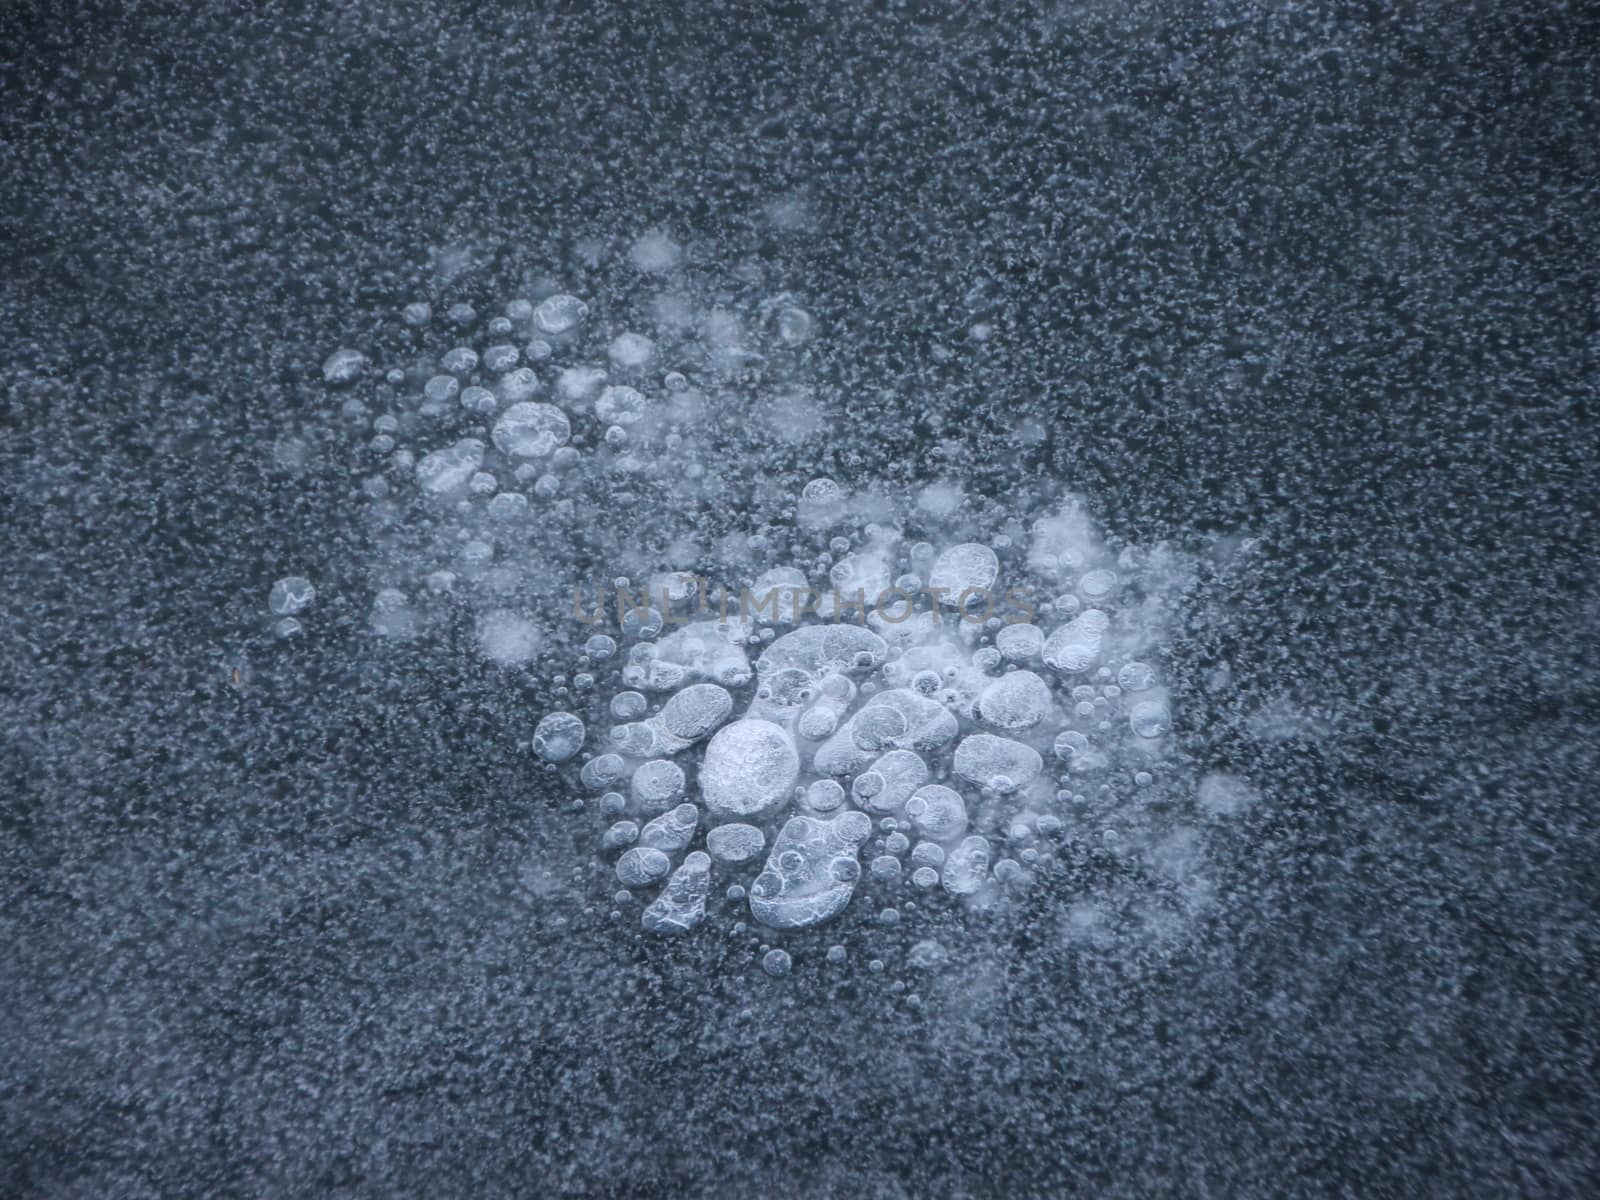 Frozen White Bubbles in Sea Water Ice Floe by HoleInTheBox